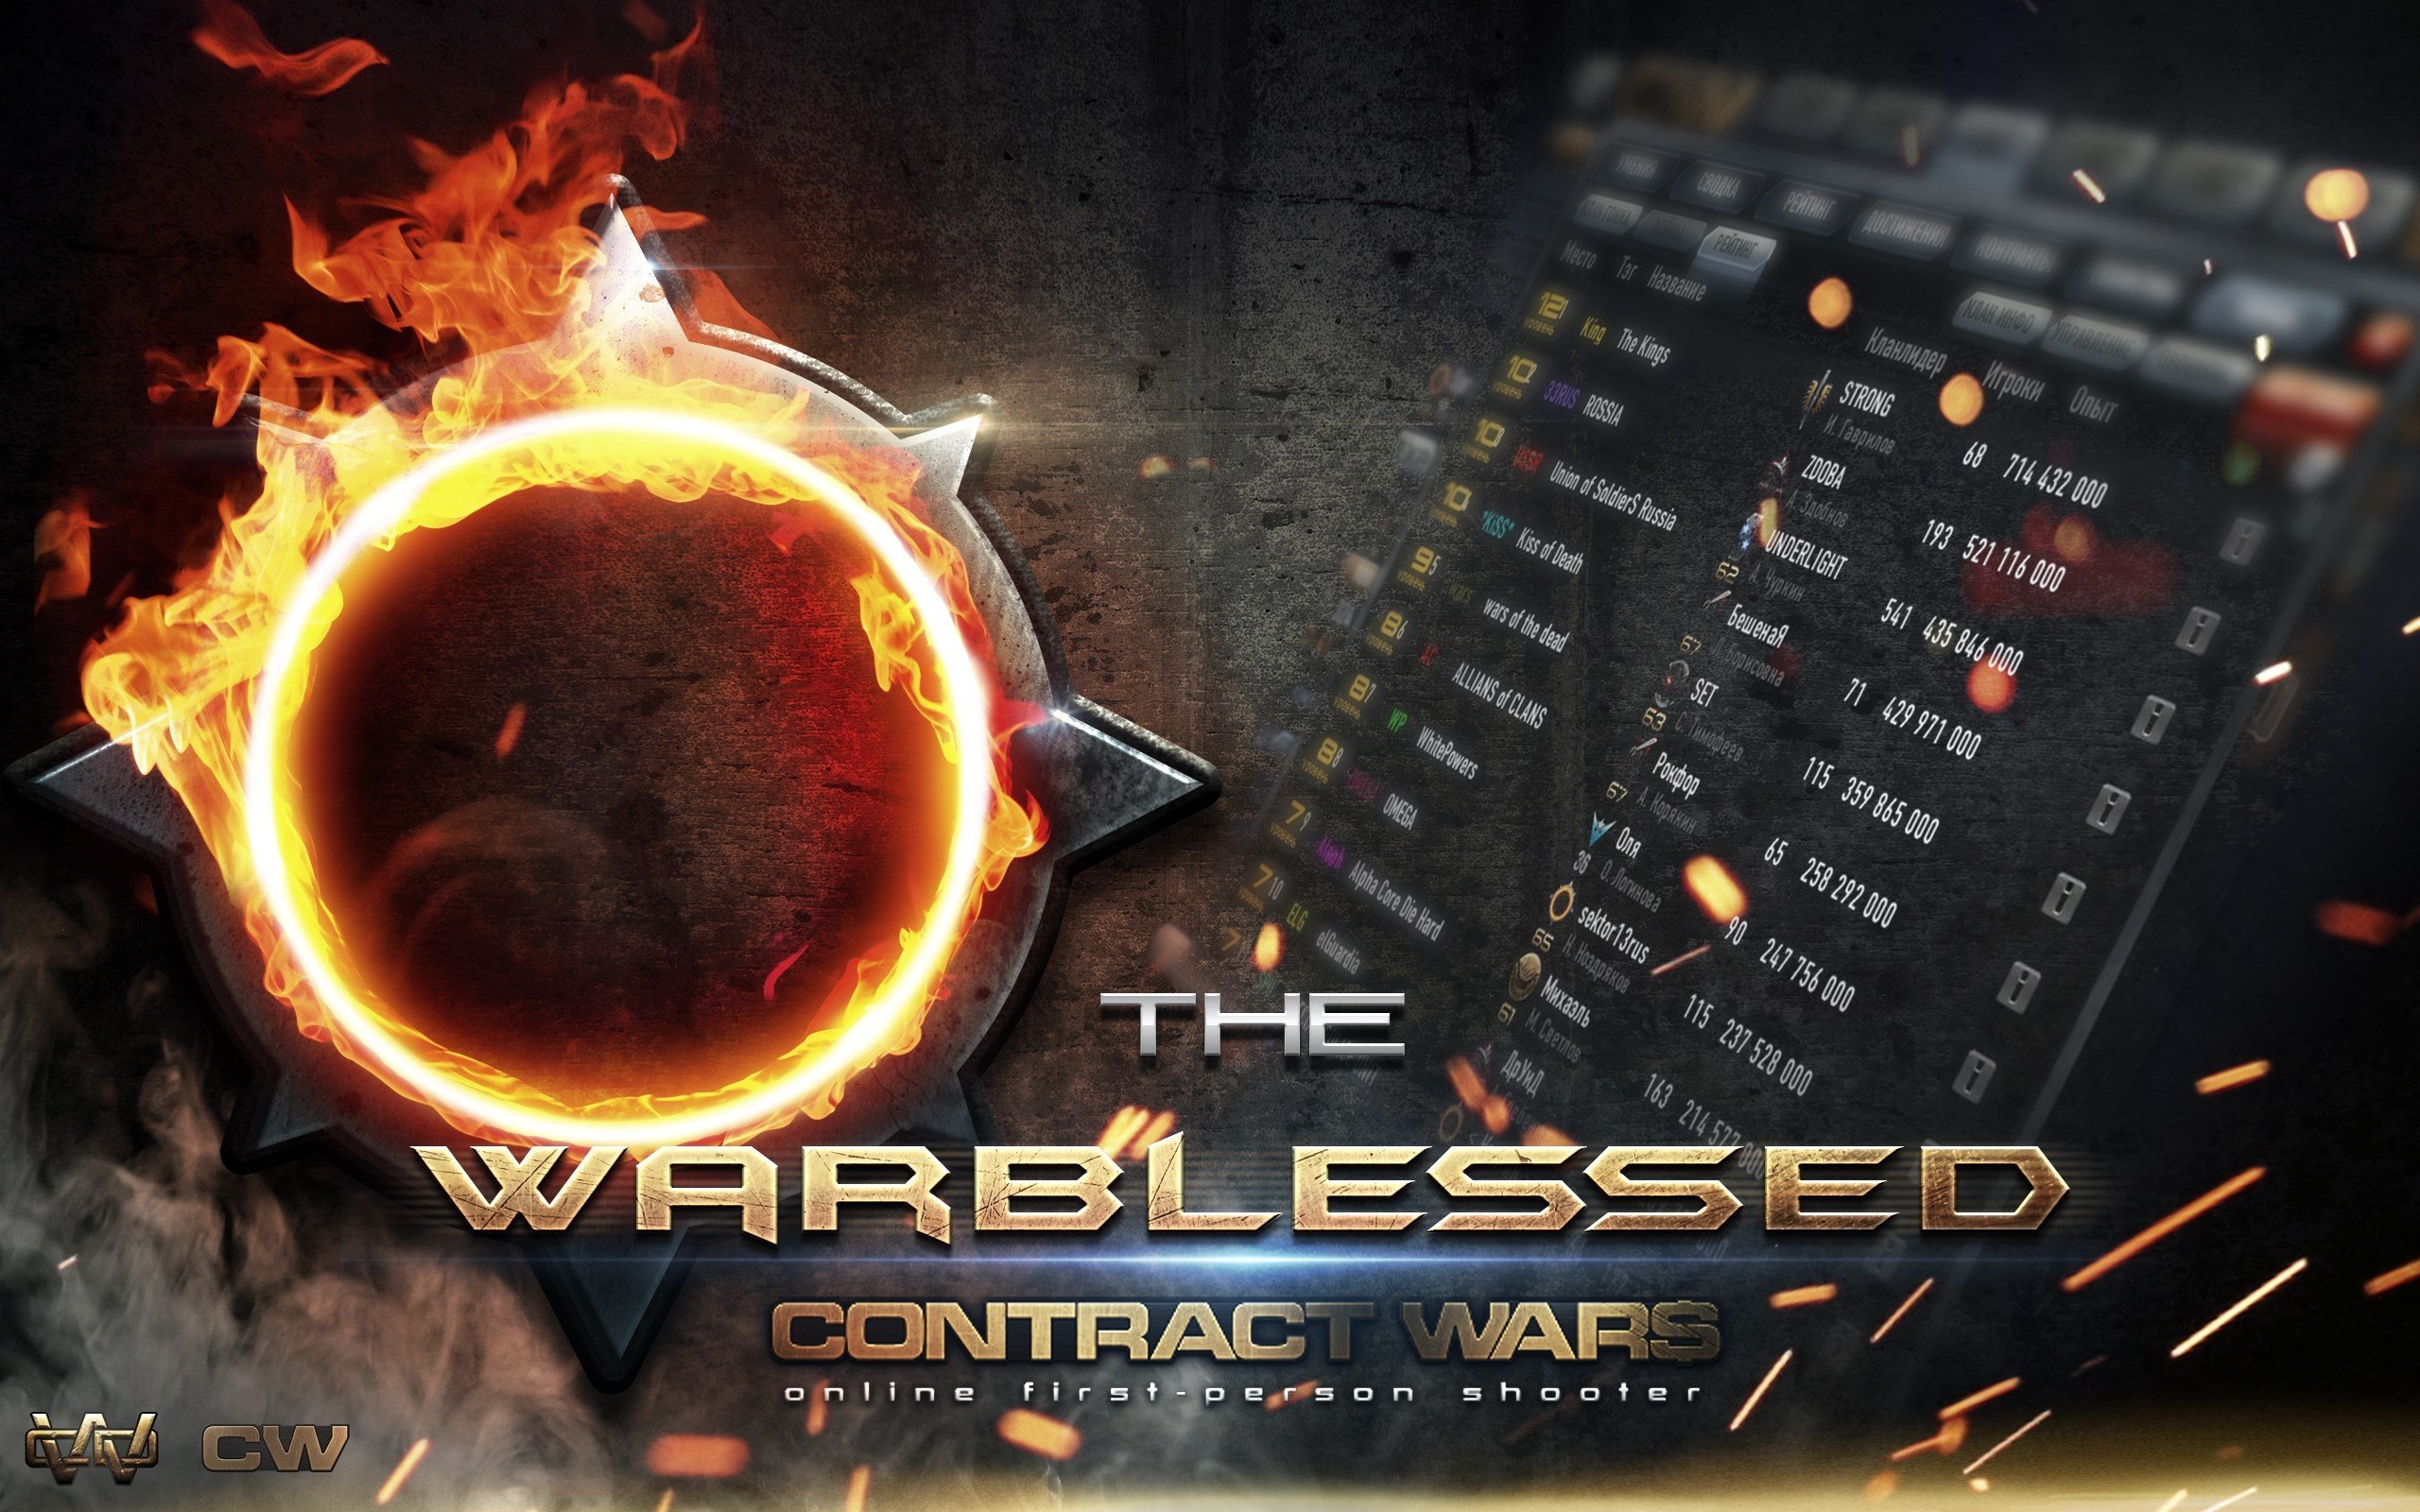 contract, Wars, Online, Poster Wallpaper